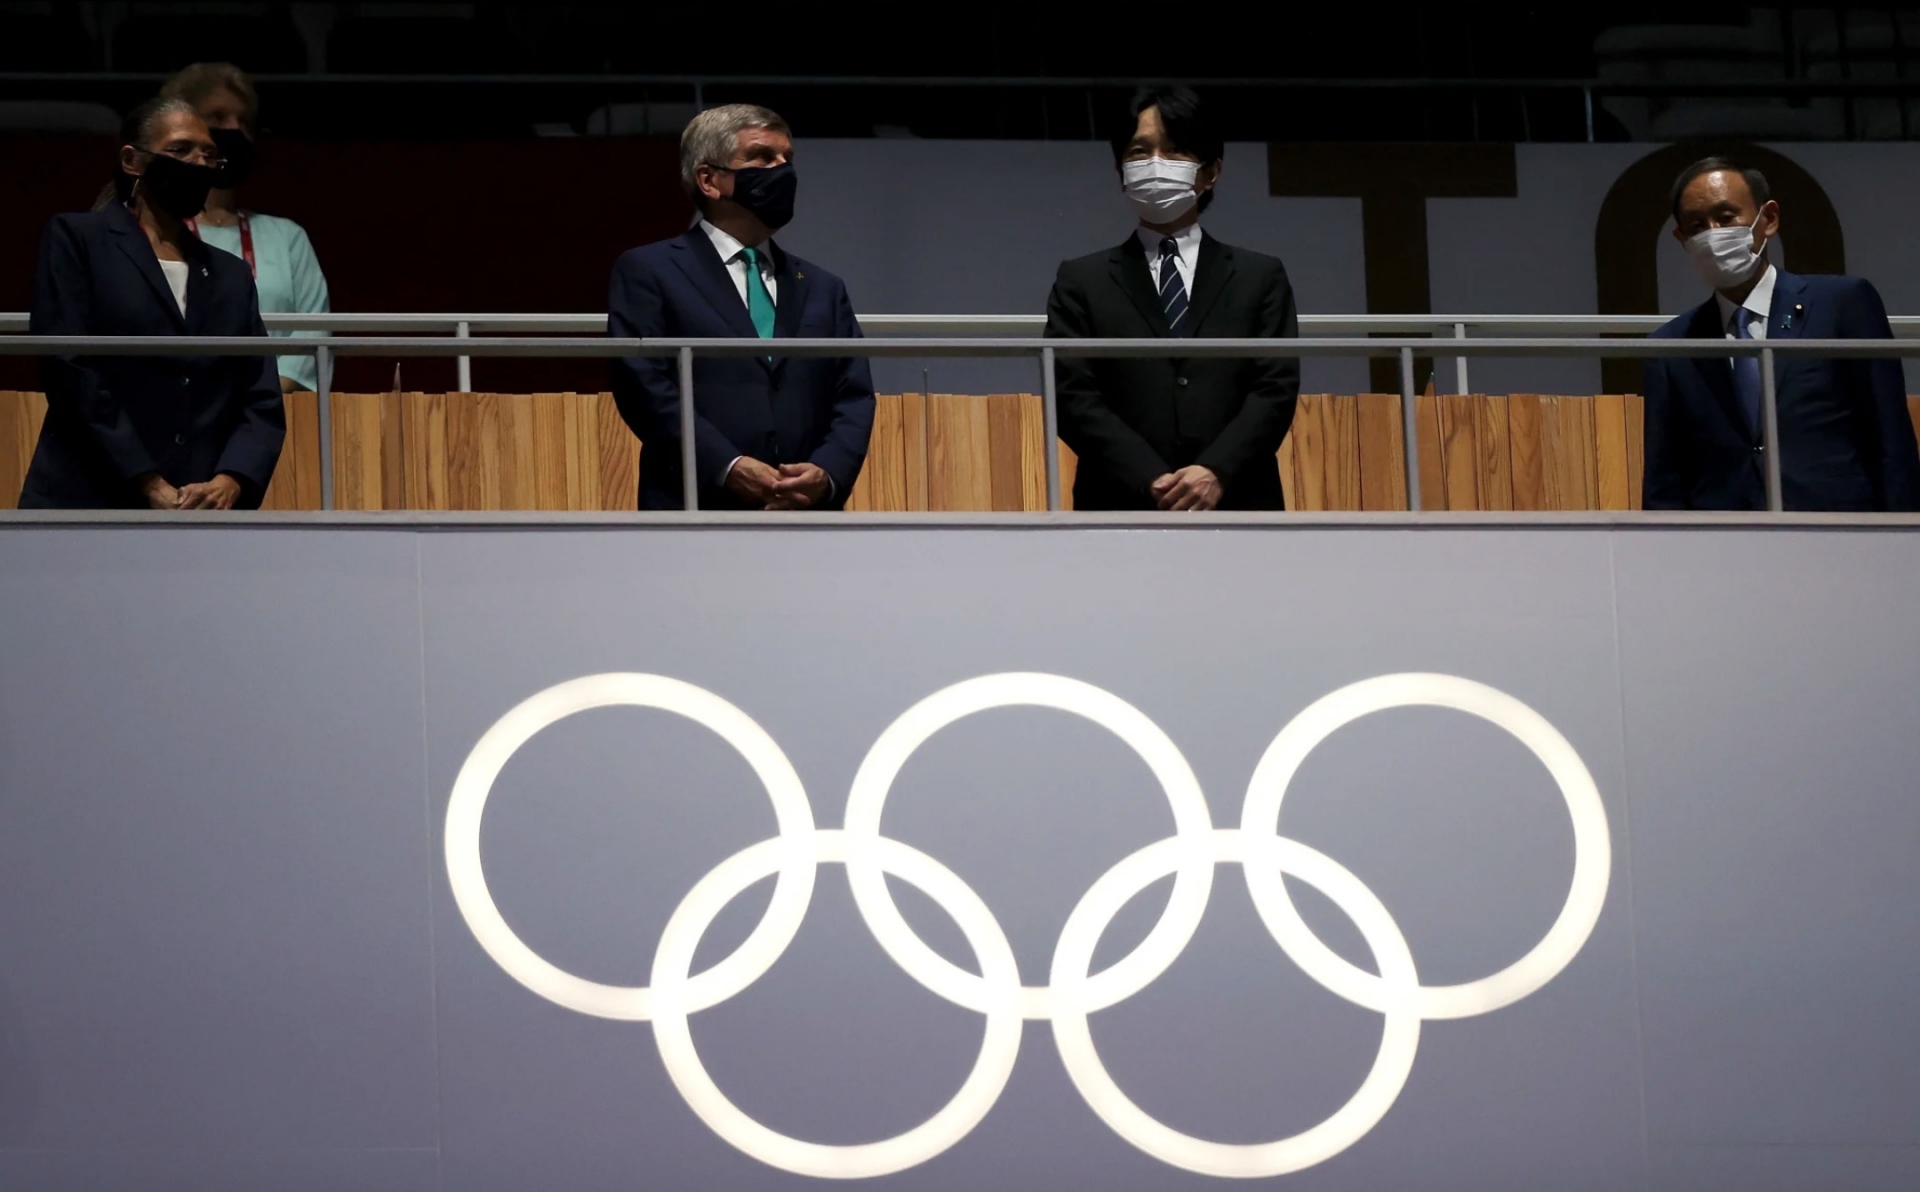 Hình ảnh khó quên tại Lễ bế mạc Olimpic Tokyo 2020